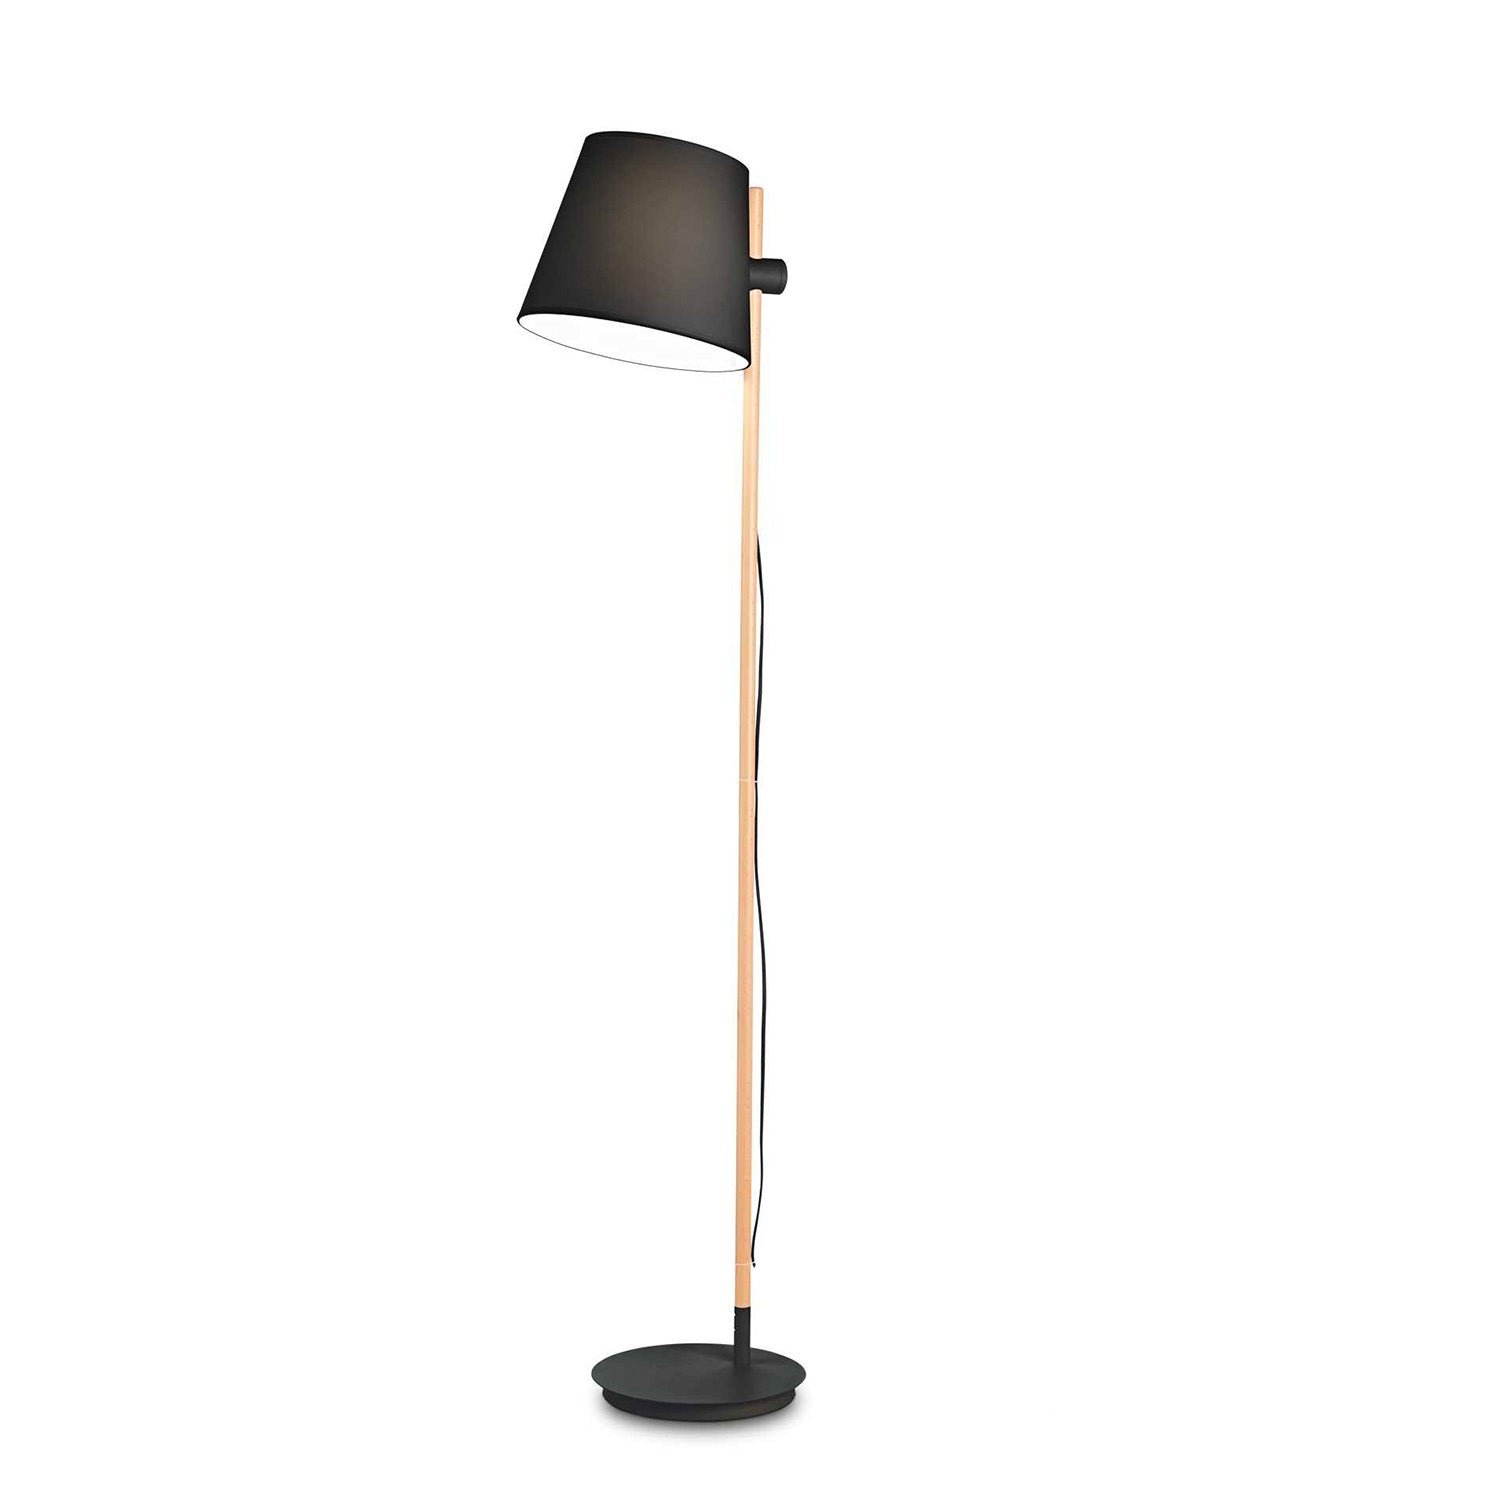 AXEL - Scandinavian wood and fabric floor lamp